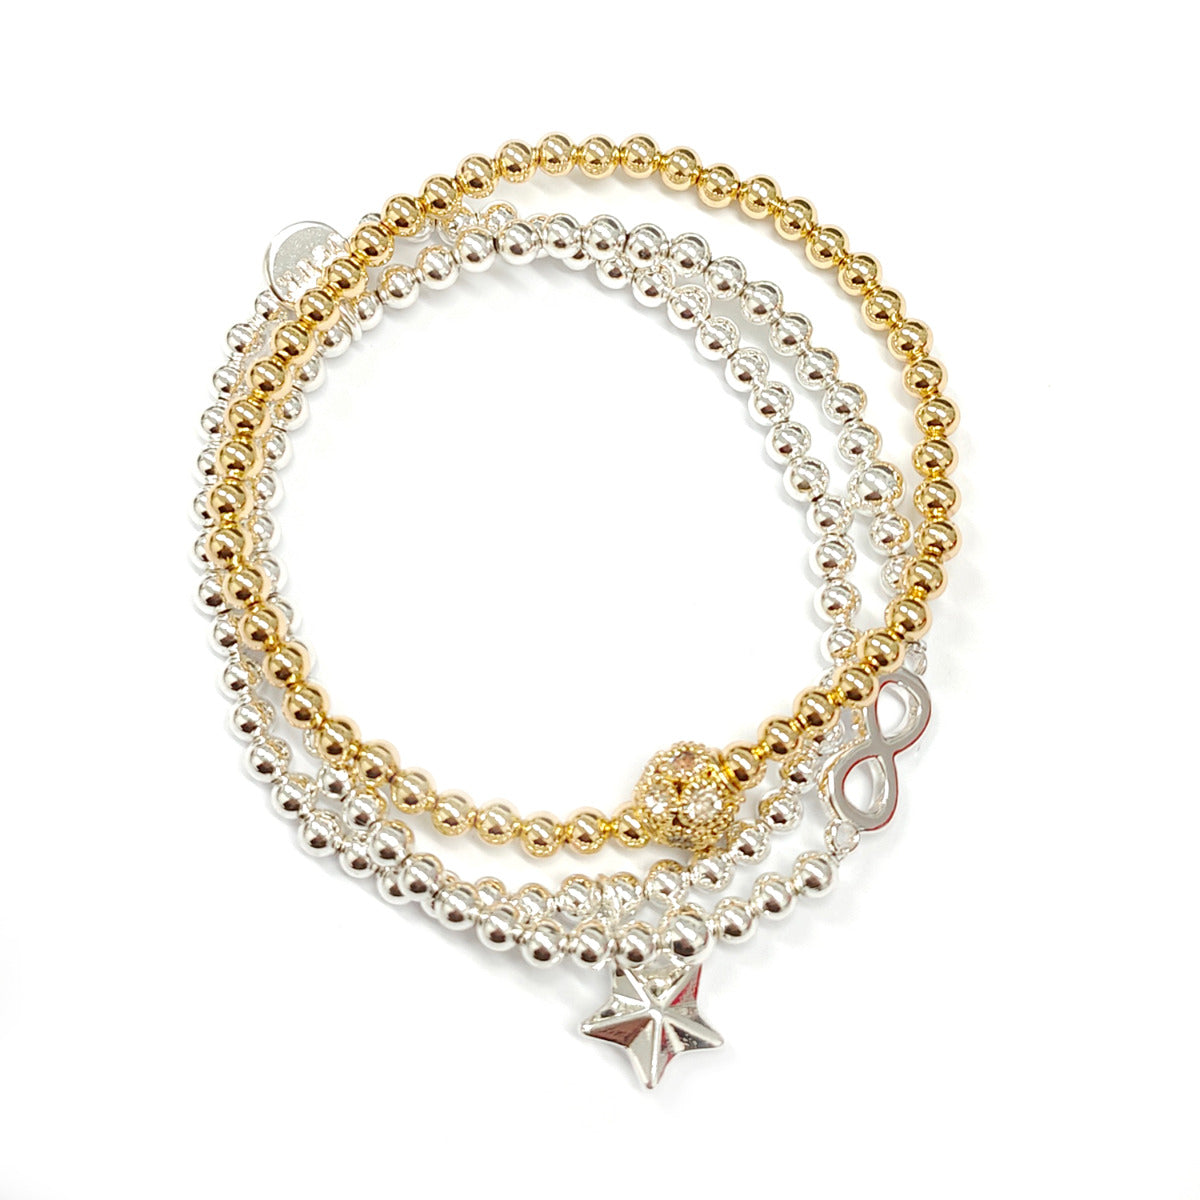 3-in-1 Duo-tone Beads Bracelet YZ13901MIX